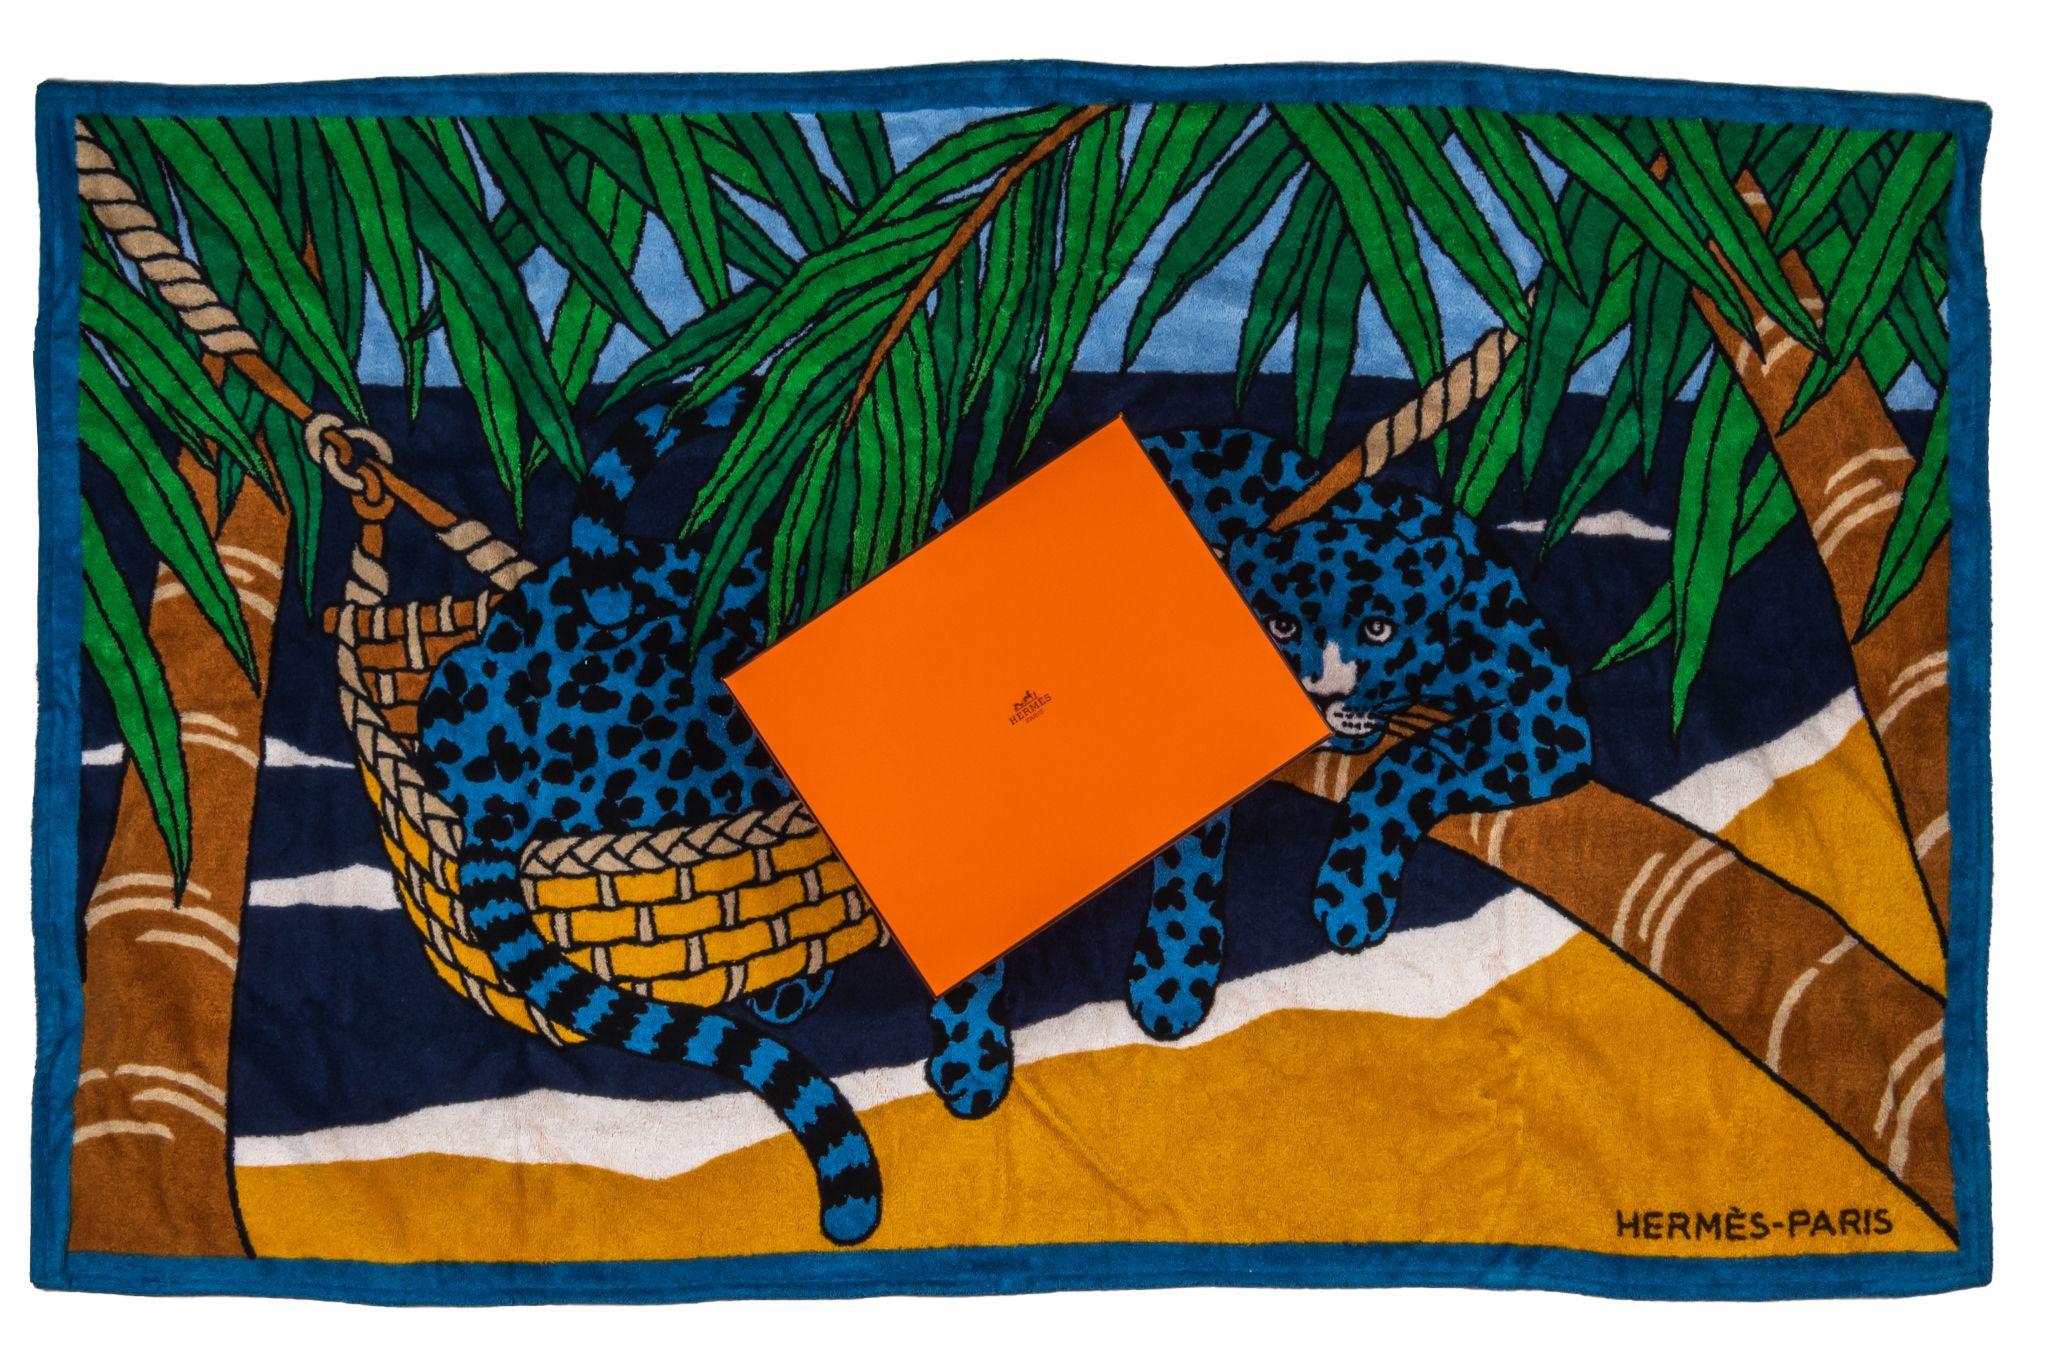 Hermès Leopard Strandtuch in grün und blau. Das Muster zeigt zwei blaue Leoparden in einer Hängematte. Der Artikel ist neu und kommt mit der Box.